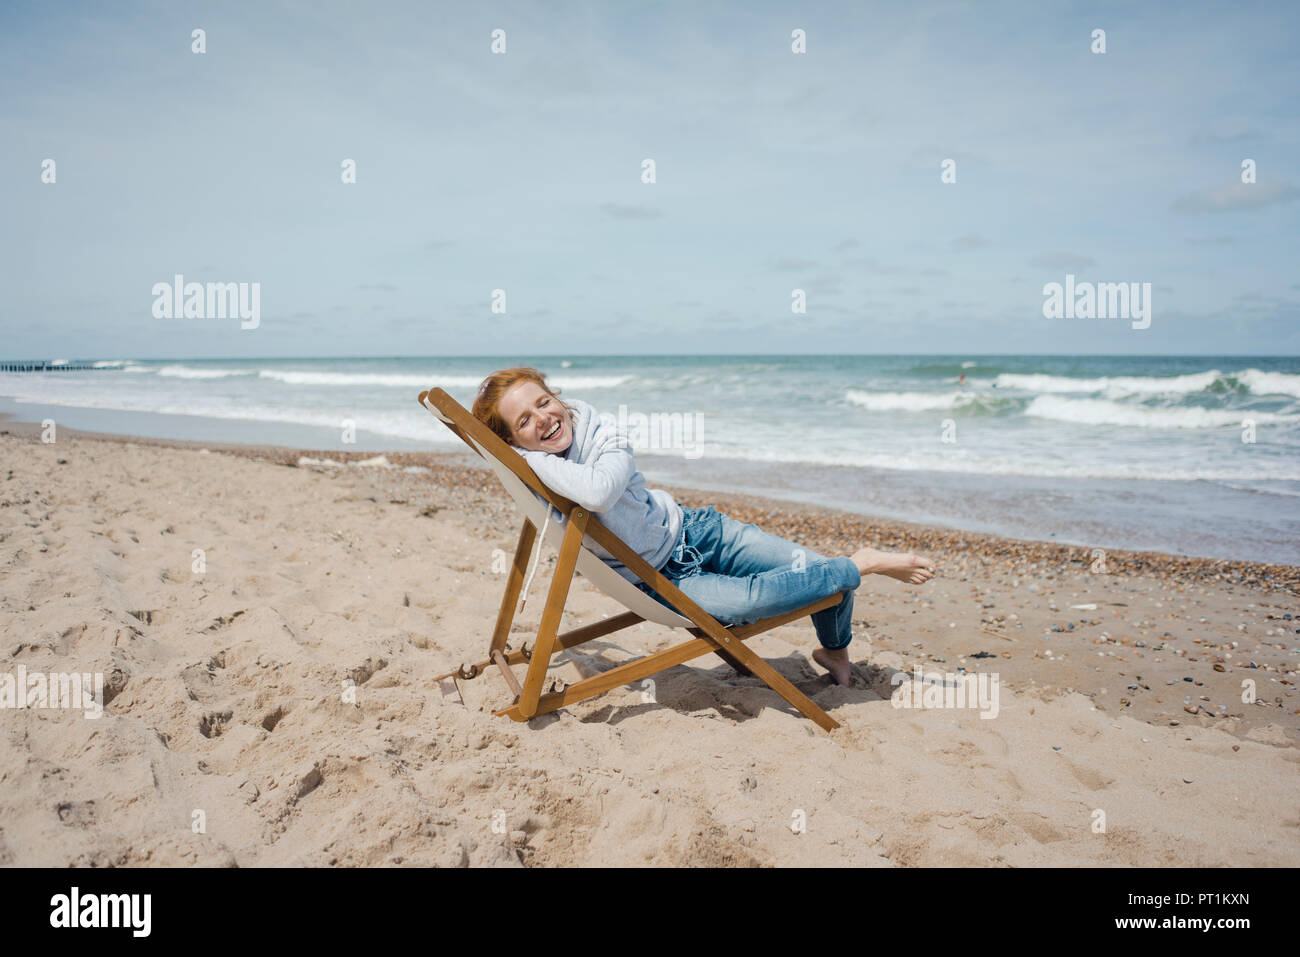 Femme allongée dans une chaise longue, bain de soleil en profitant de la plage Banque D'Images